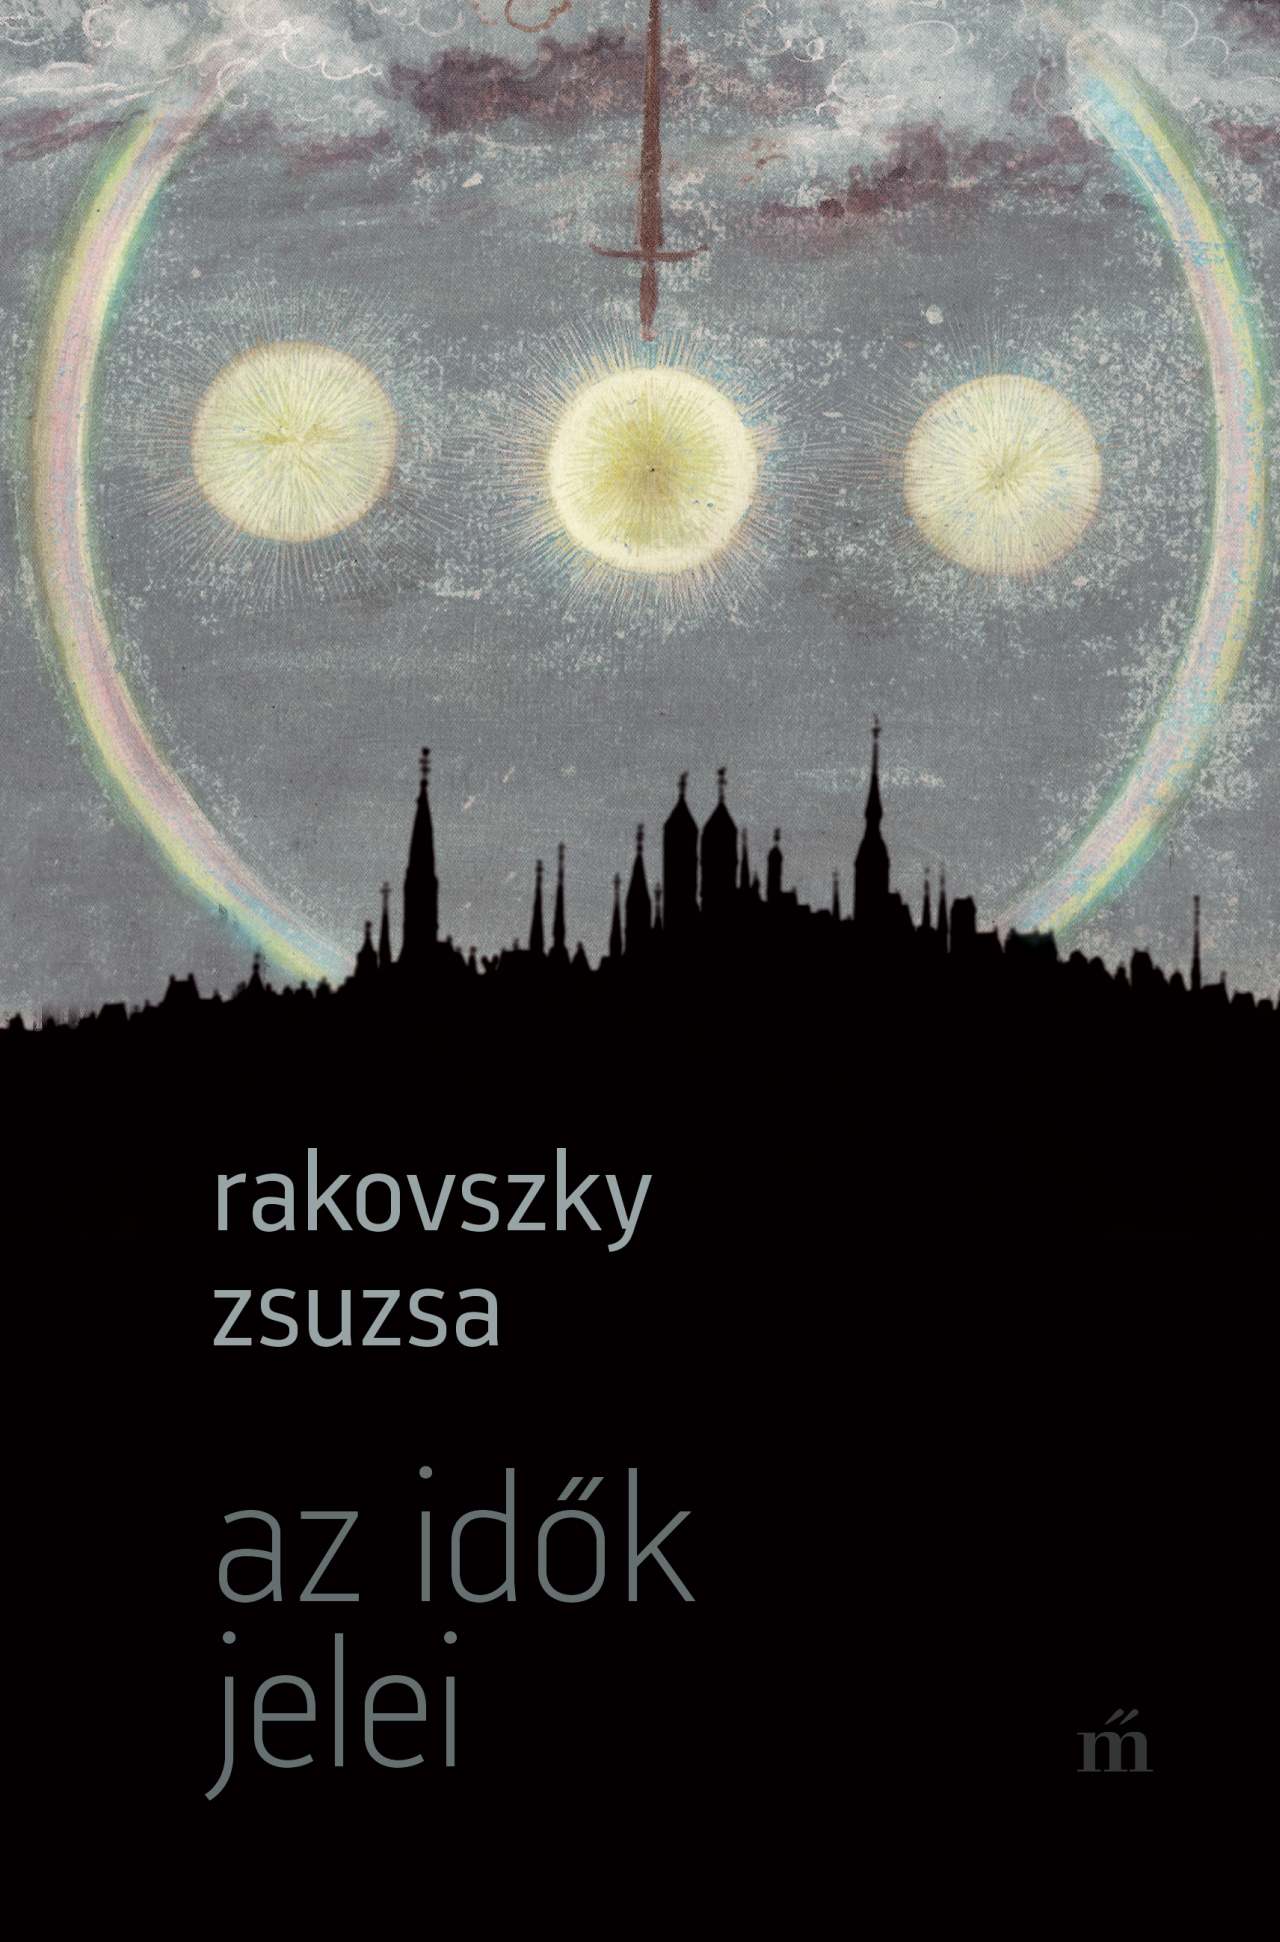 Rakovszky Zsuzsa - Az idők jelei